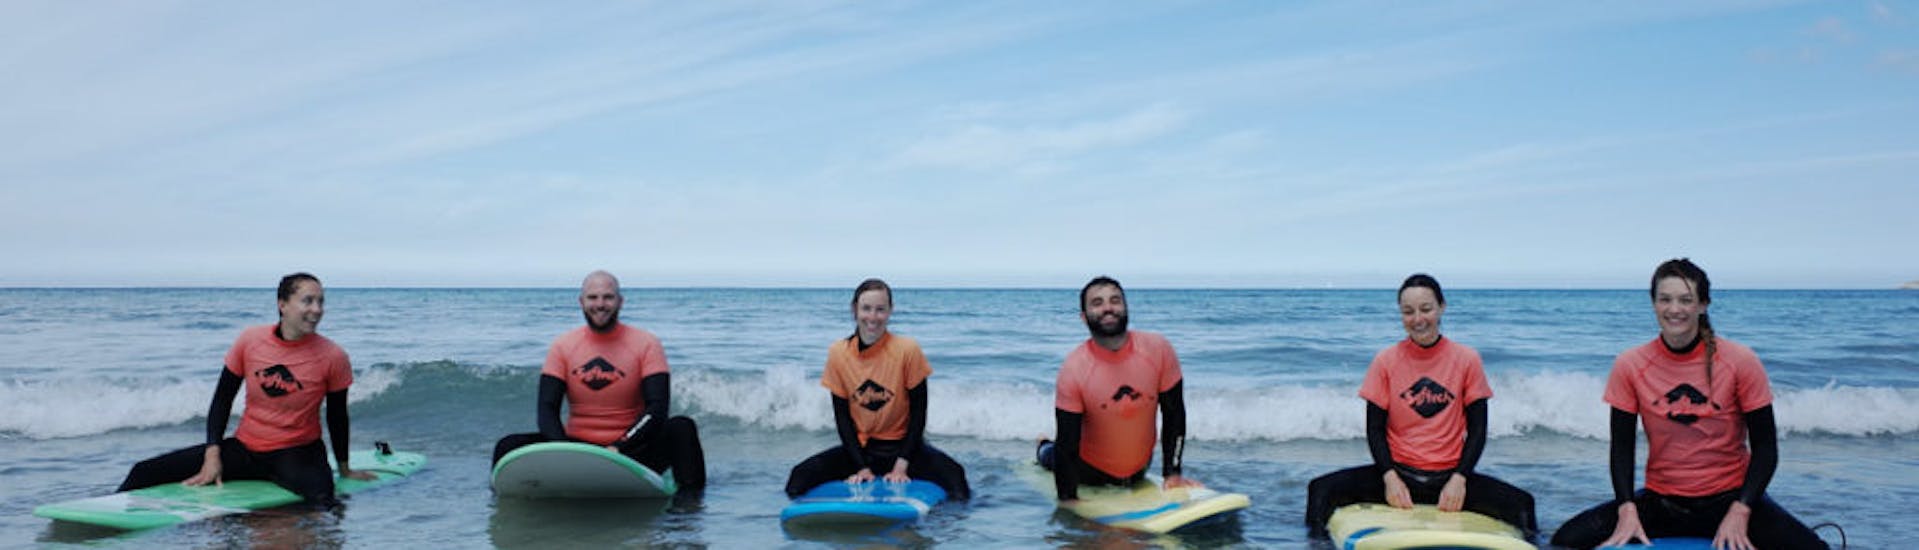 Personnes s'amusant sur leur planche de surf pendant leur Cours de surf (dès 5 ans) dans le Pays de Brest avec Minou Surf School Pays de Brest.